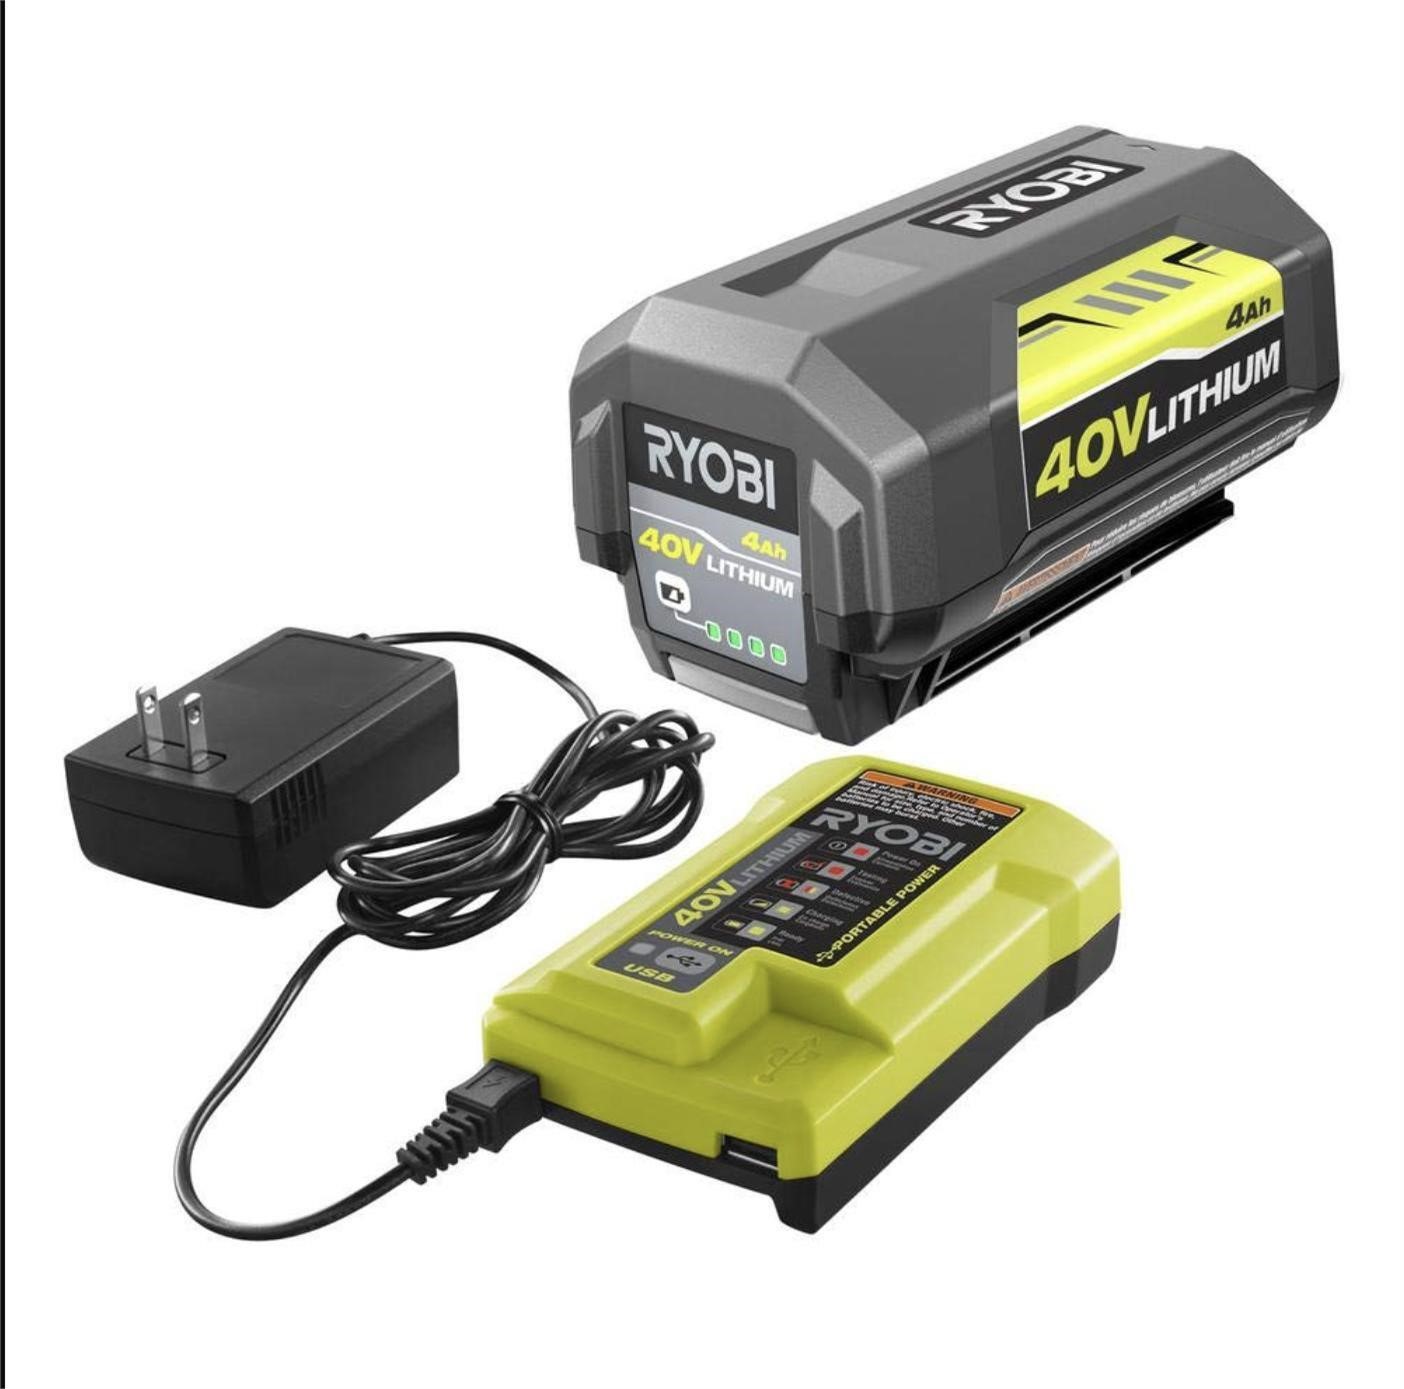 Ryobi 40V 4.0Ah Battery and Charger